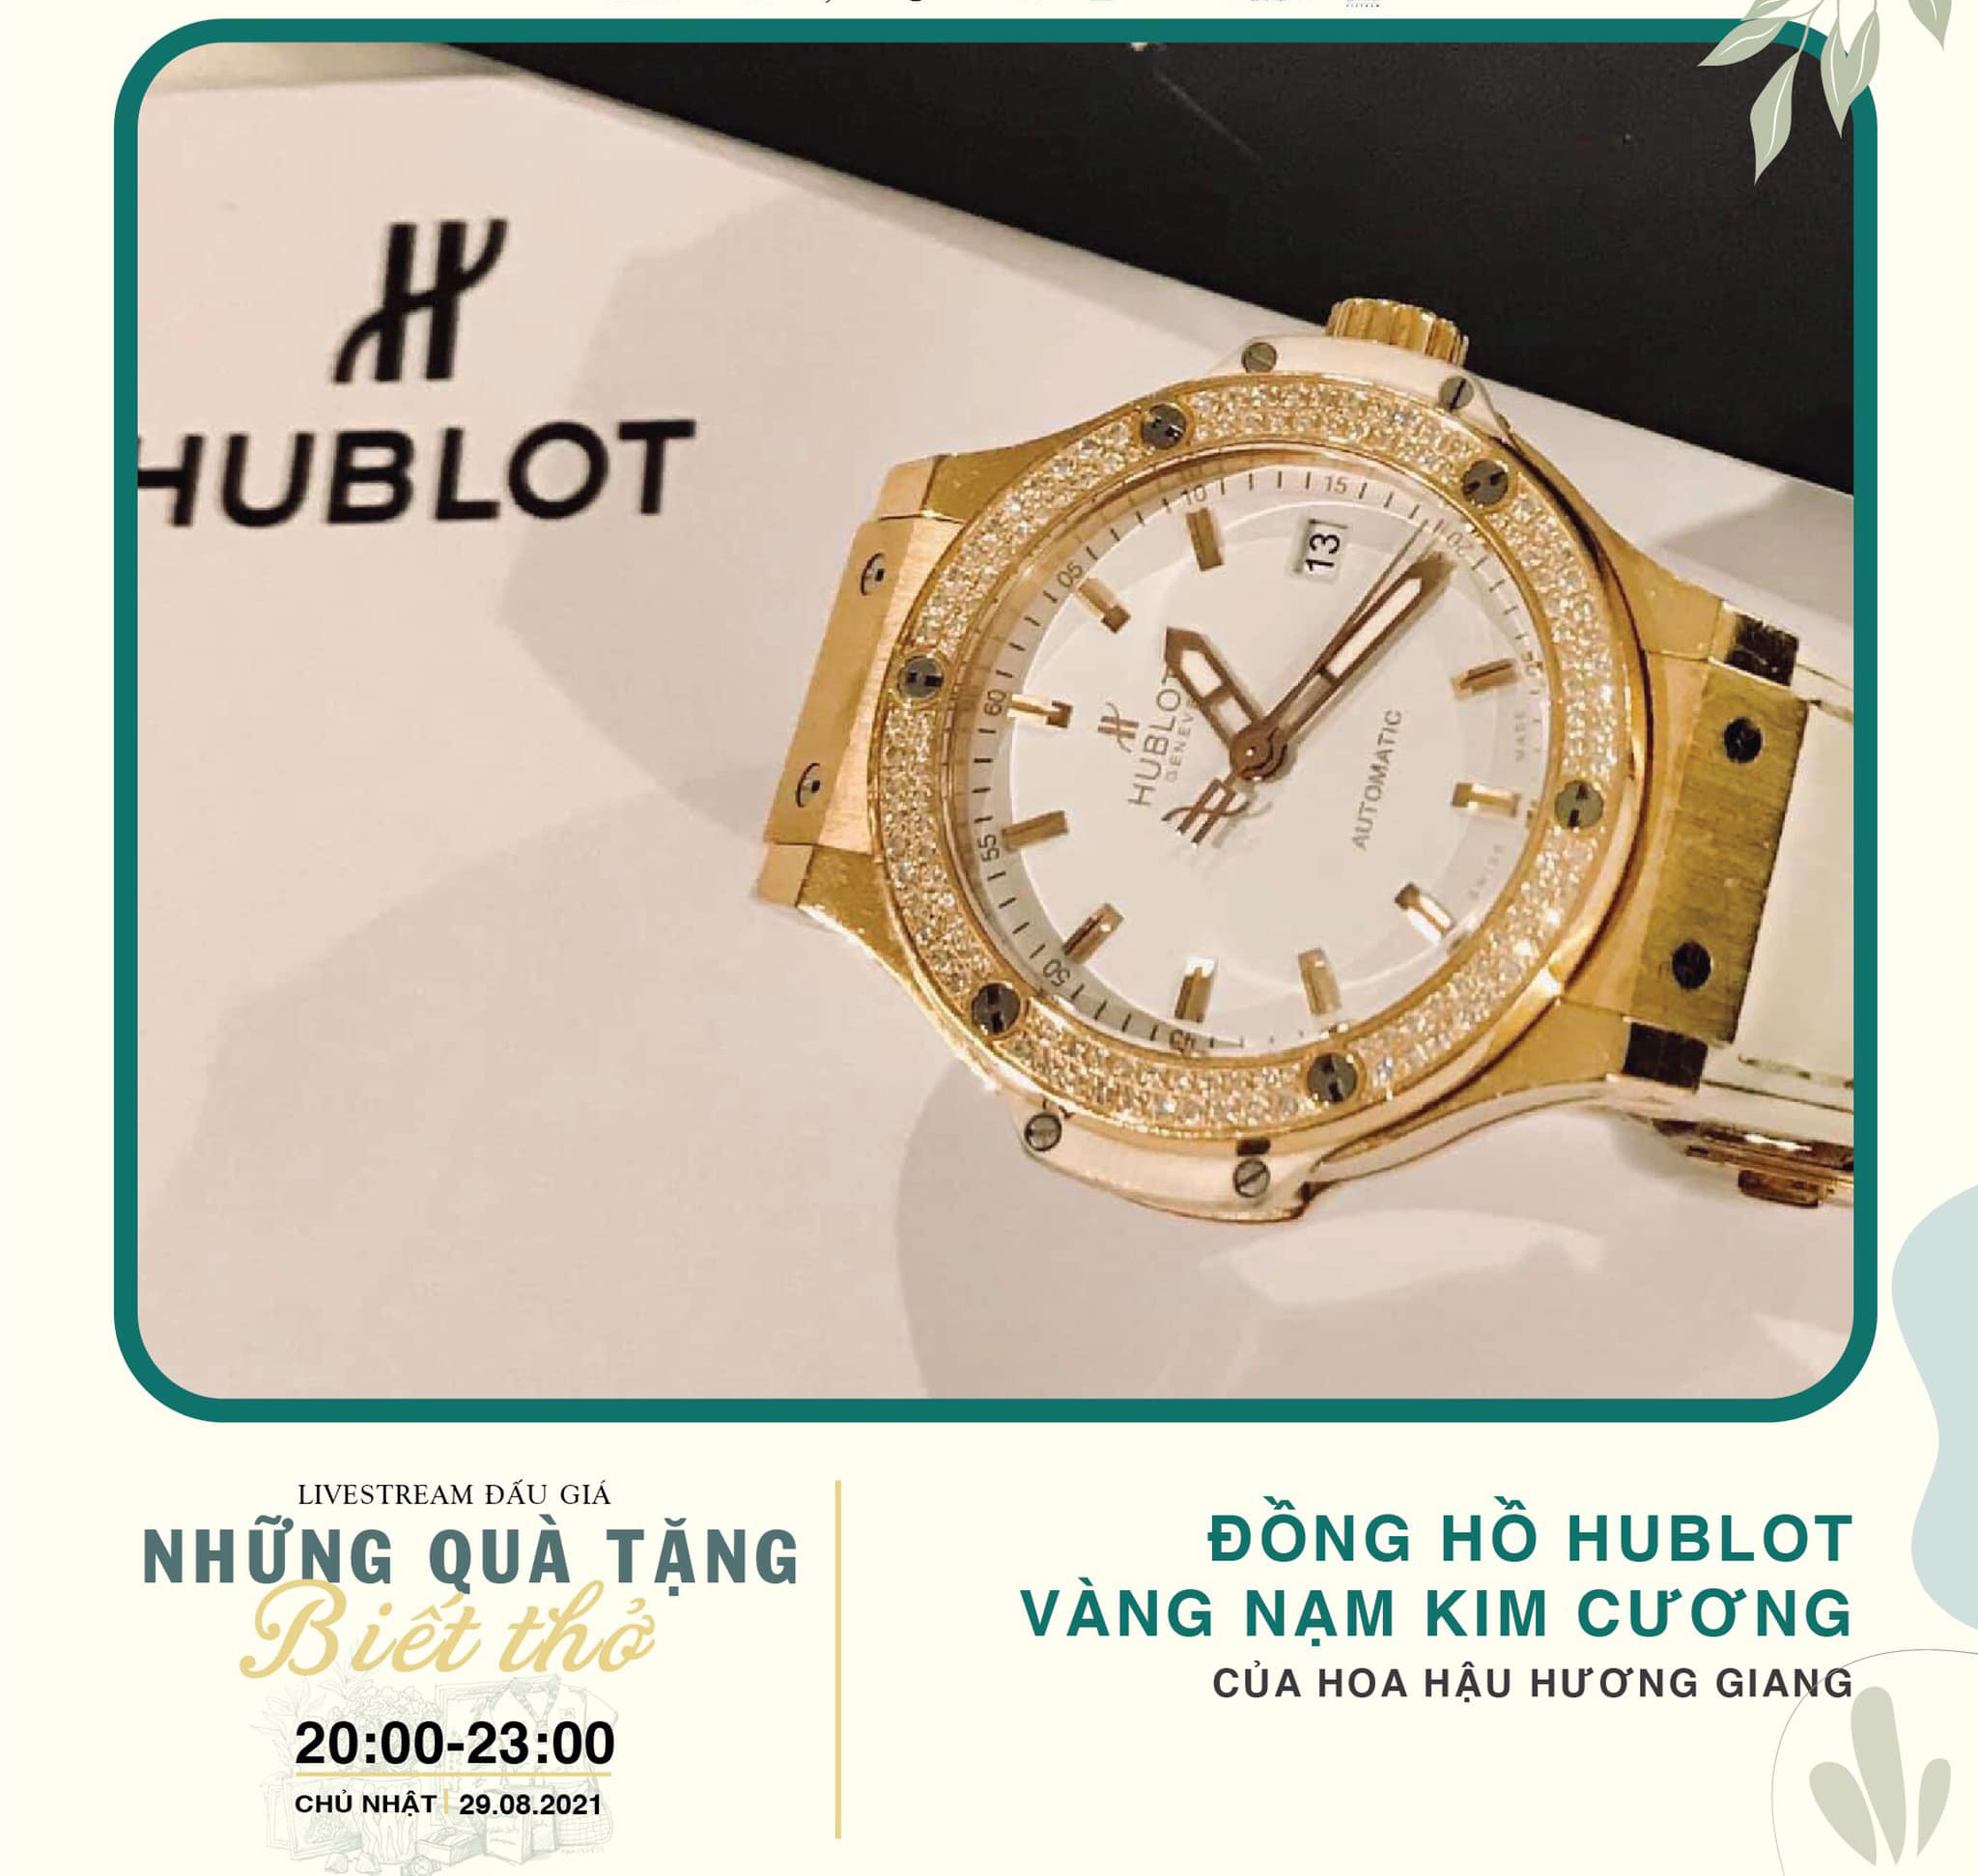 Chiếc đồng hồ Hublot từng được Hương Giang đấu giá 900 triệu đồng và tặng lại tiếp tục được đem ra đấu giá lần 2